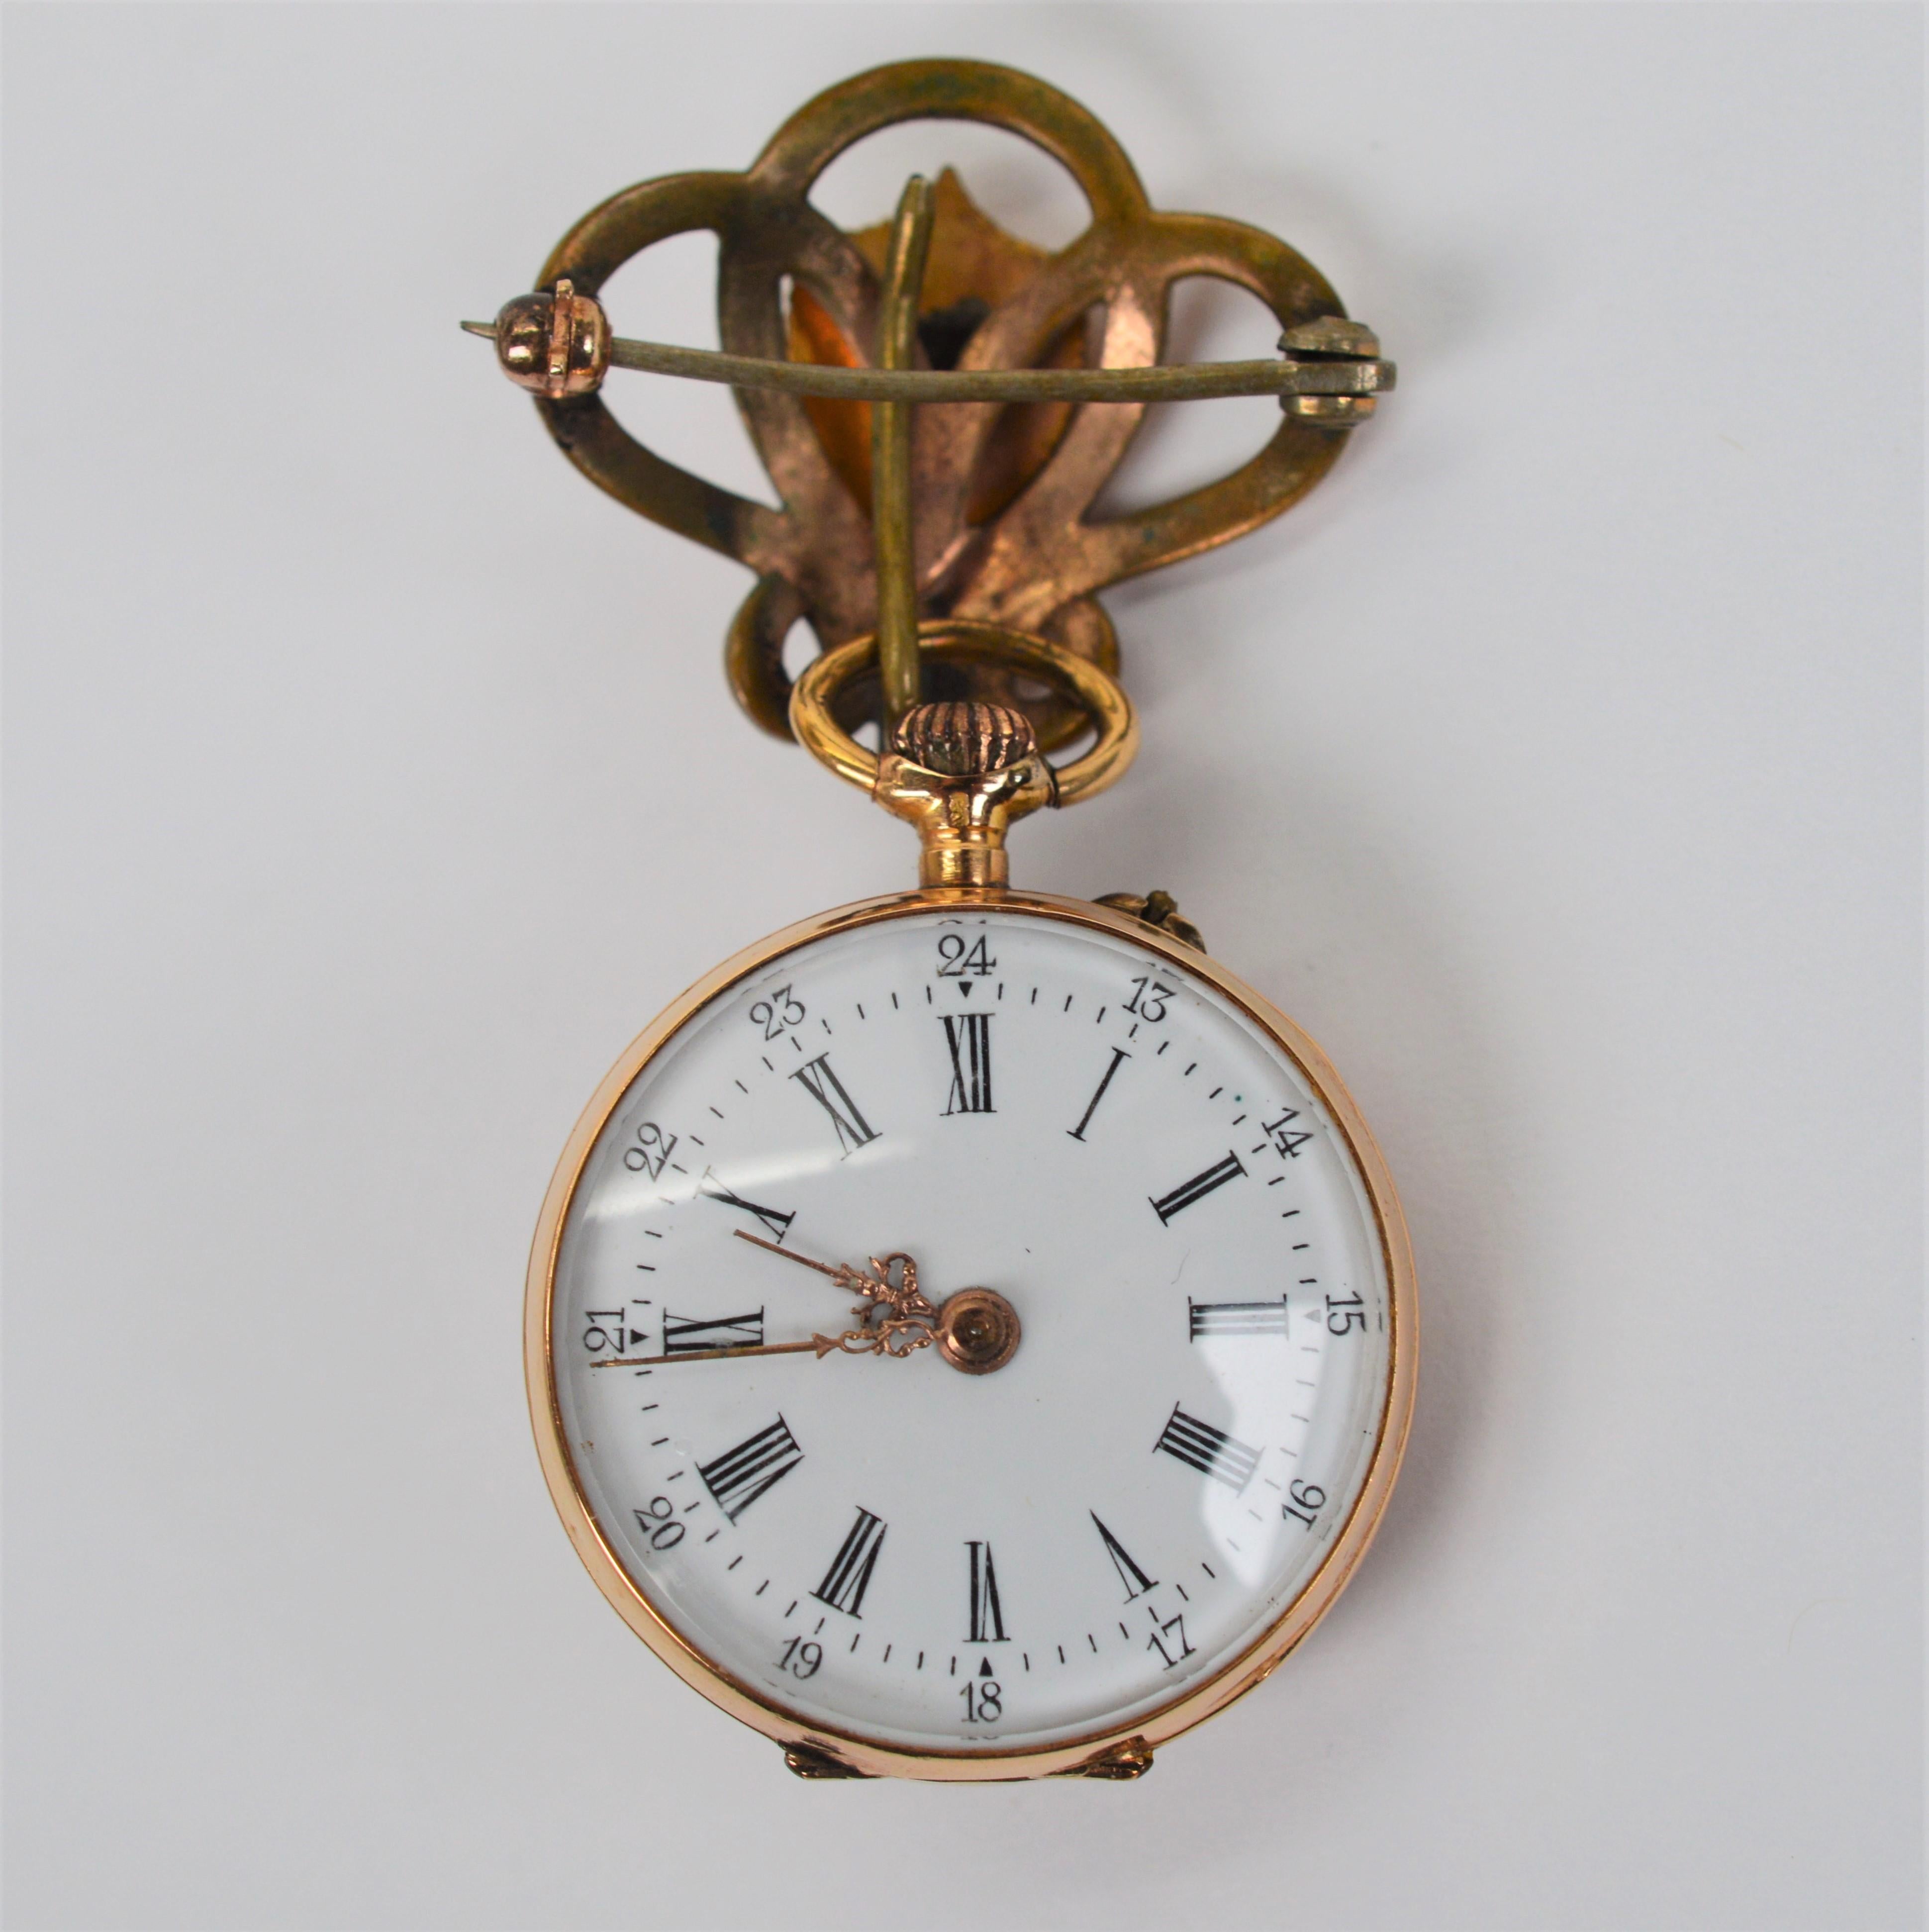 Als Höhepunkt der Mode im frühen 19. Jahrhundert ist diese schöne Uhrennadel ein spektakuläres Beispiel für einen feinen Damenzeitmesser aus dieser Zeit. Das aus 14 Karat Gelbgold gefertigte Gehäuse ist mit einem Granat in der Mitte und